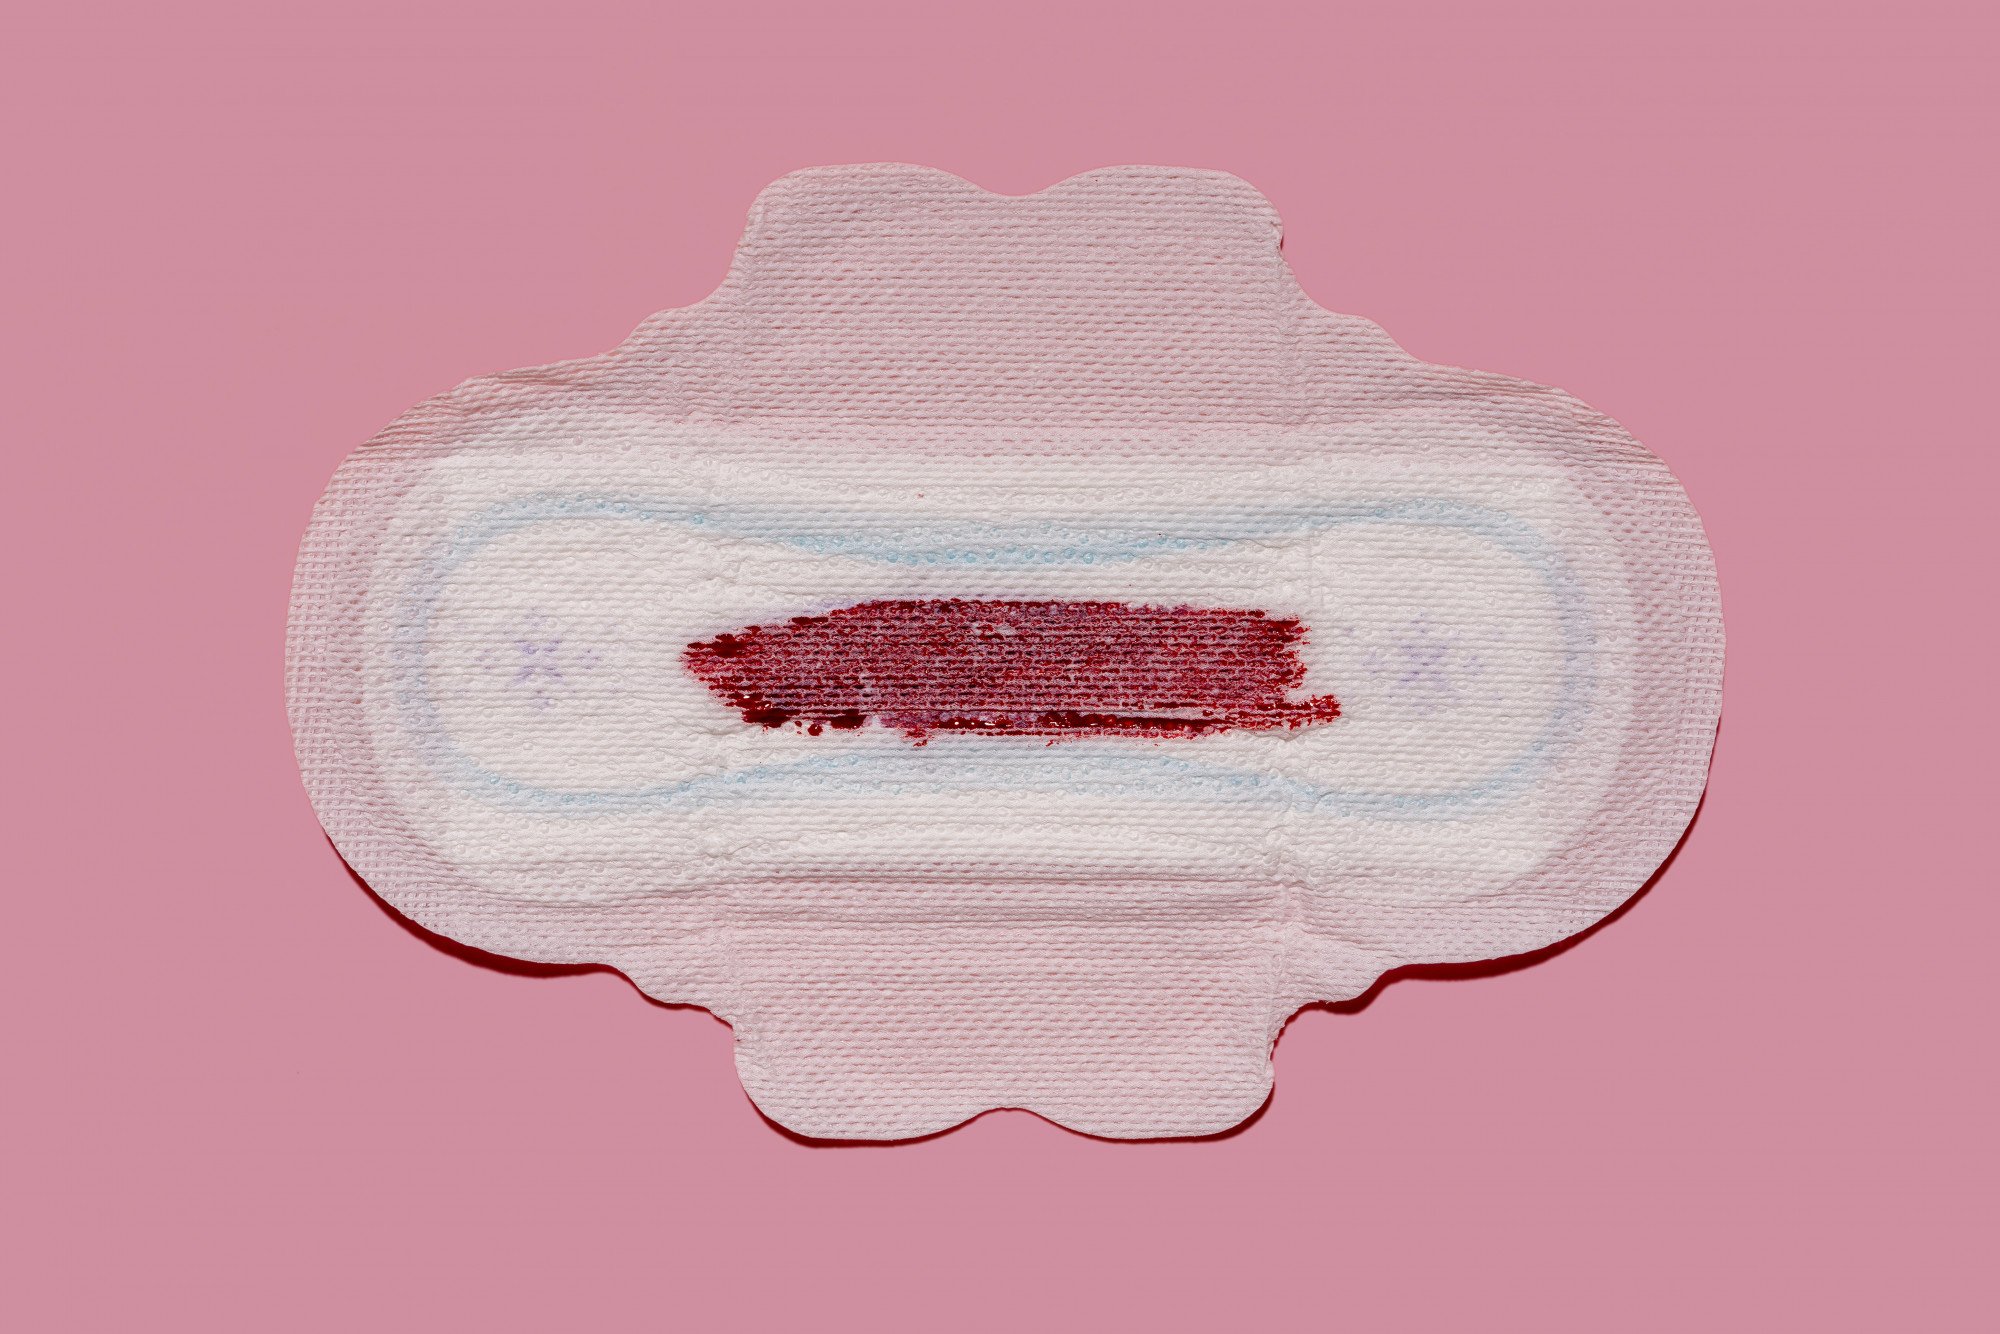 Coágulos Menstruais: O que são e como lidar?